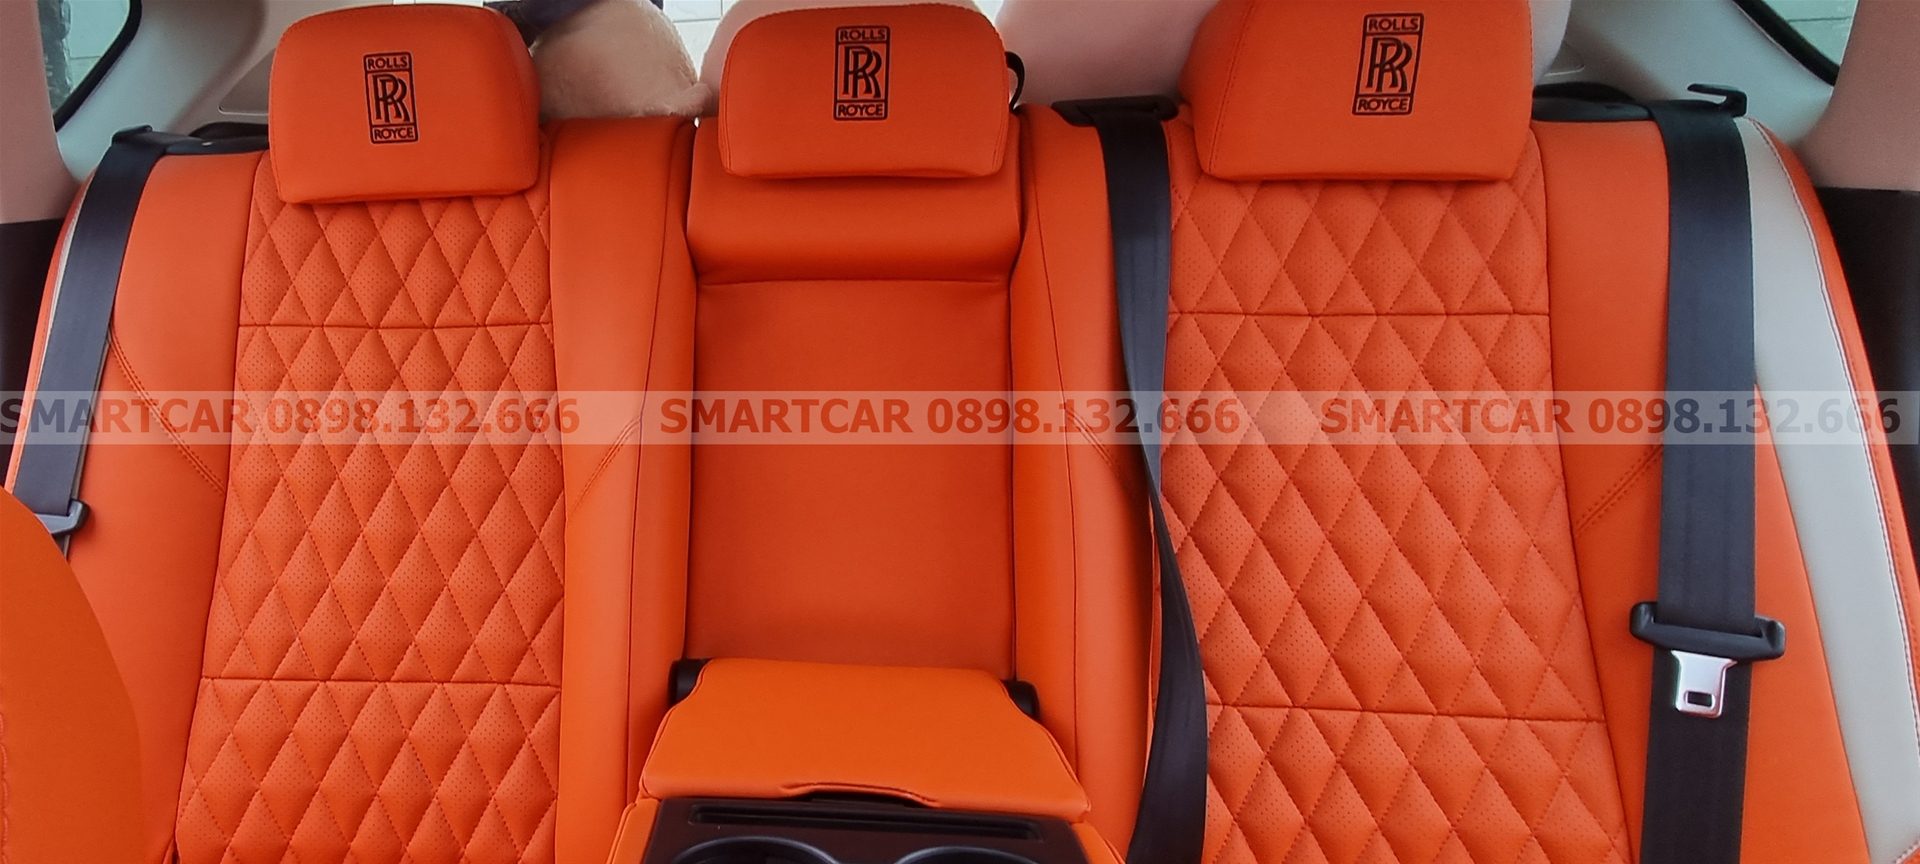 Bọc ghế da Mazda CX5 màu cam Hermes - Hình 3